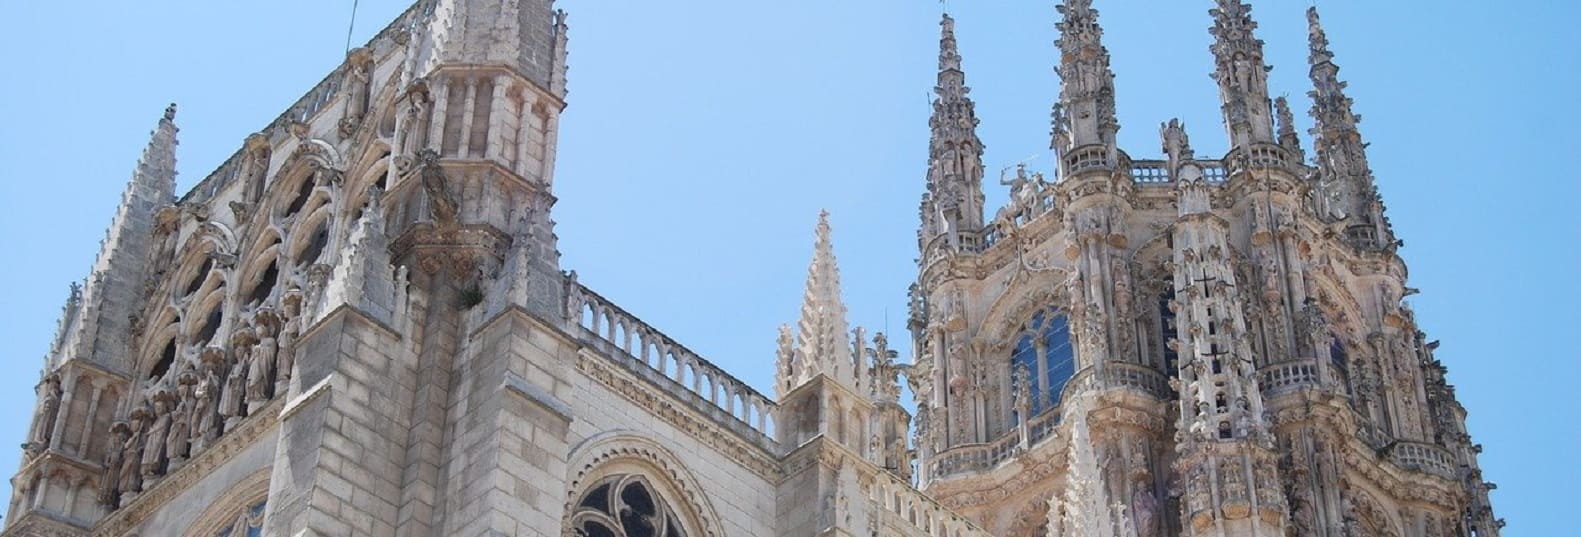 cathedrale burgos pelerinage saint jacques de compostelle